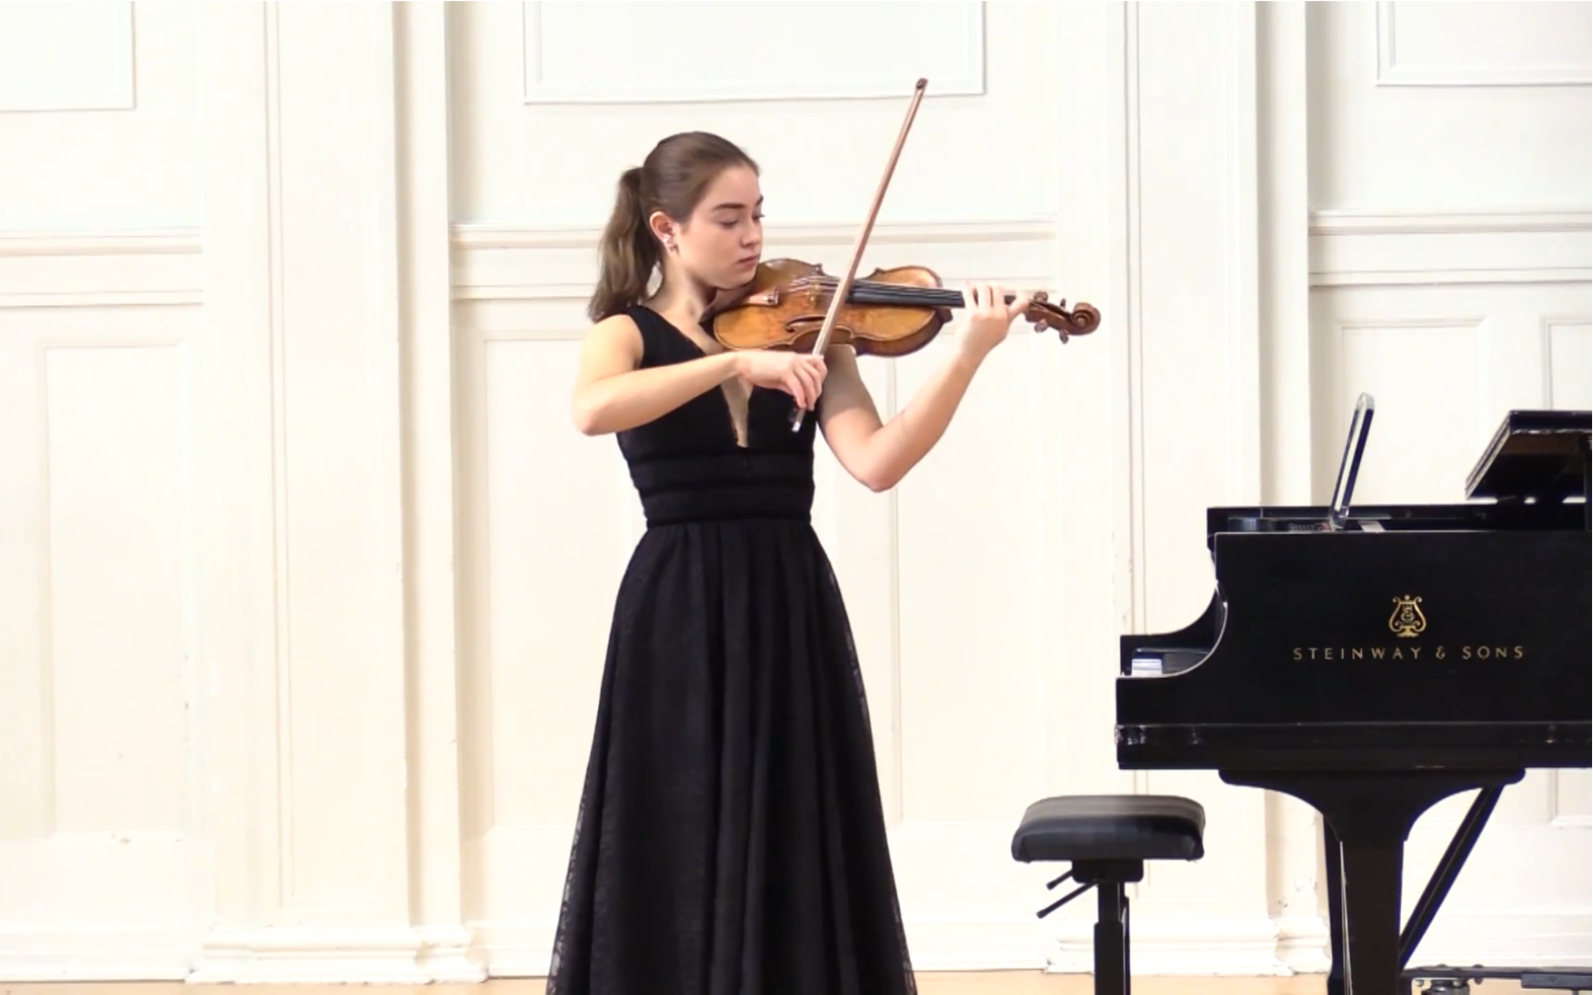 [图]帕格尼尼 随想曲No.13 & 小提琴 / Paganini Caprice No.13. Irina Casasnovas & violin